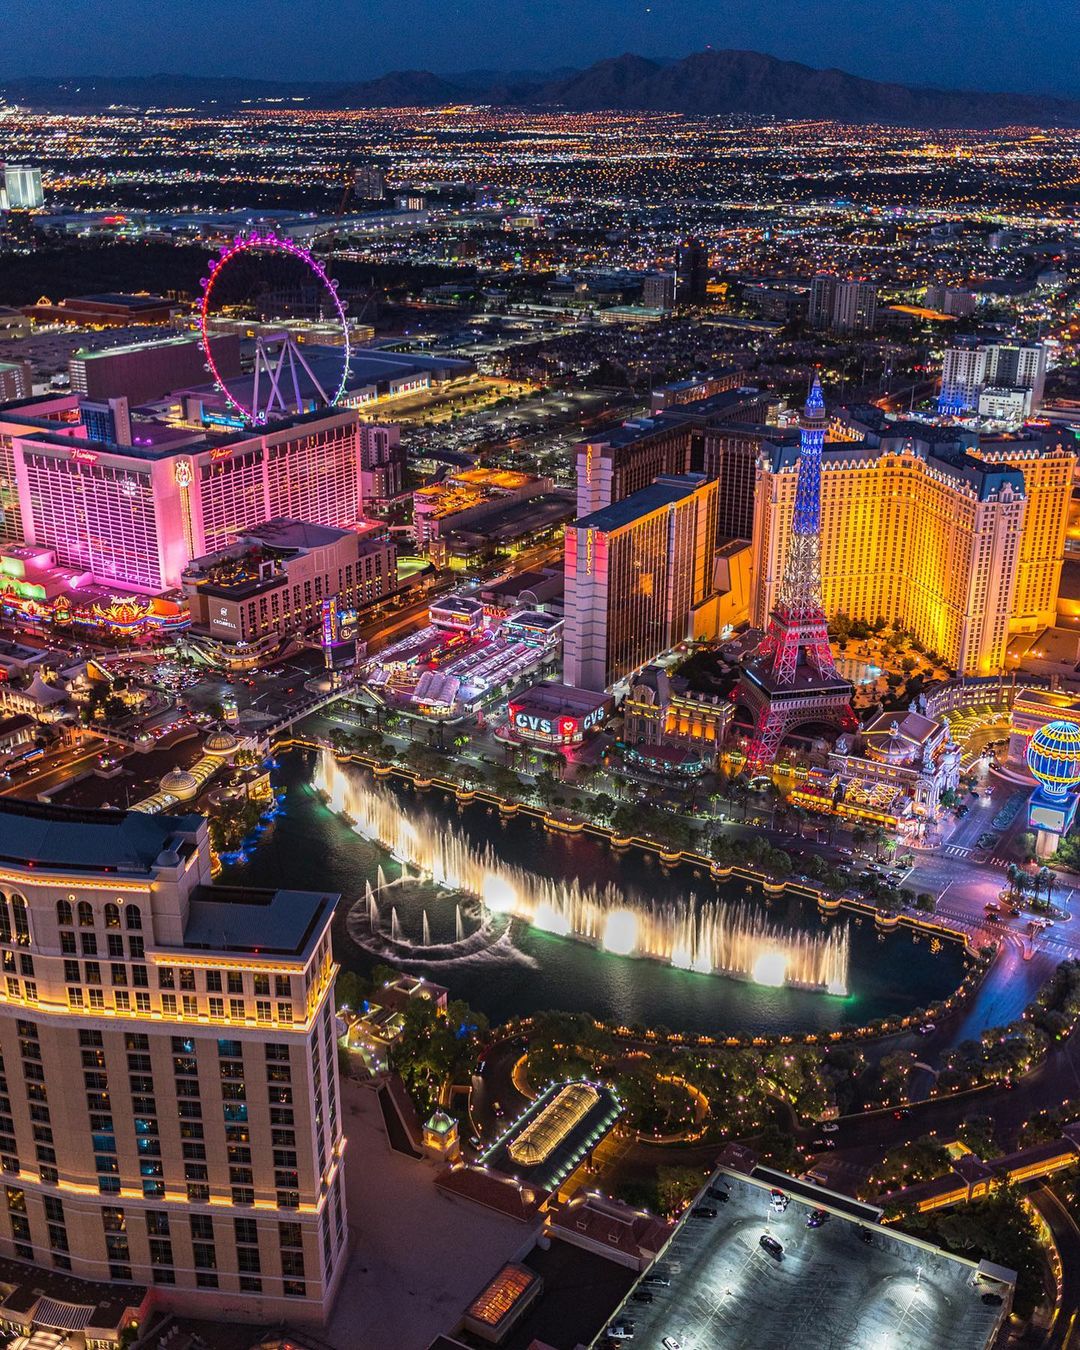 Aerial Nighttime view of Las Vegas, NV. Photo by Instagram user @claytonhaam